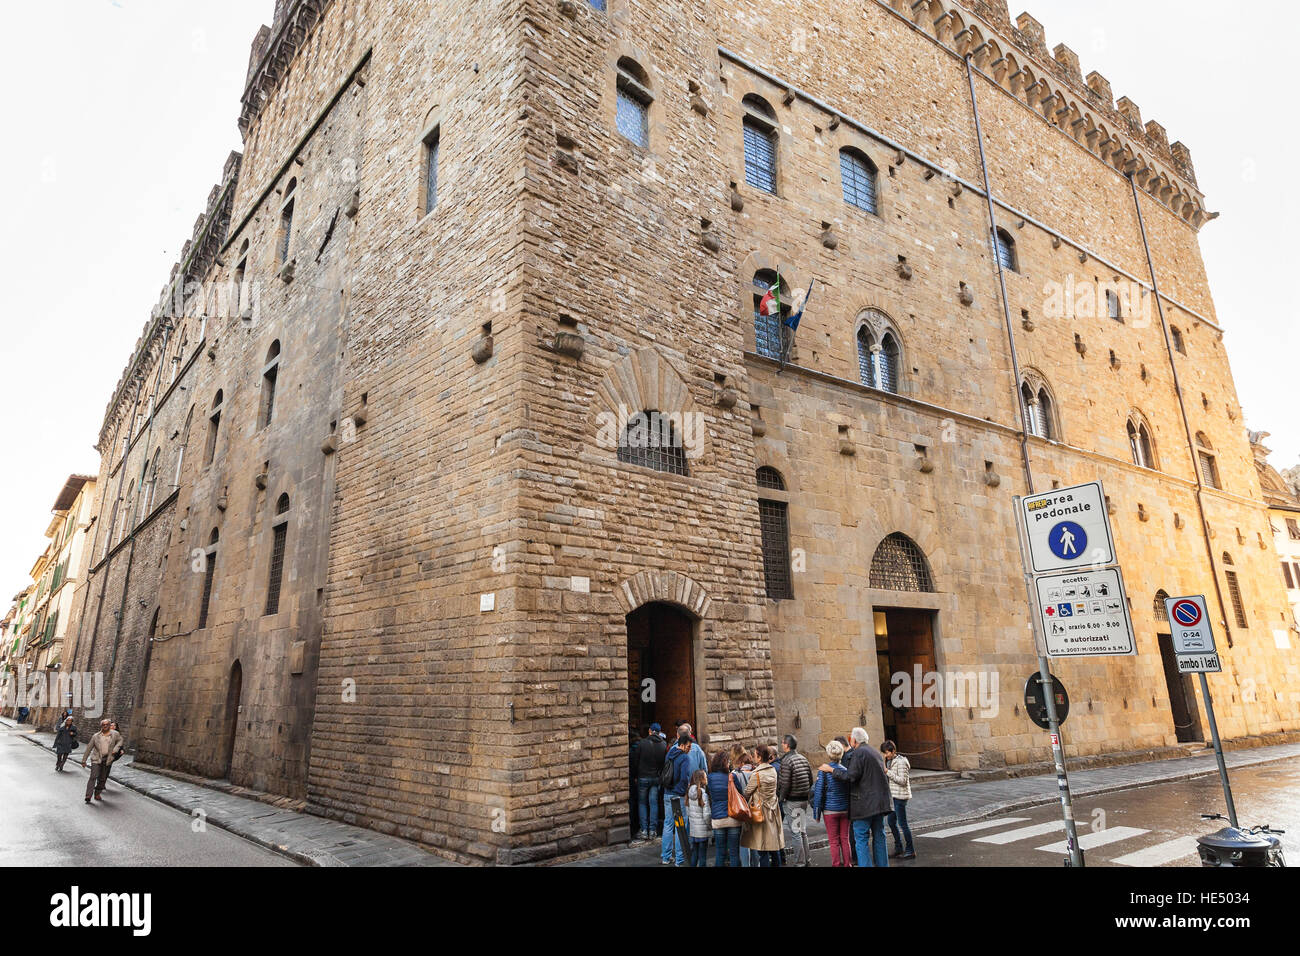 Florenz, Italien - 6. November 2016: Touristen in Zeile im Bargello Palast (Palazzo del Bargello, Palazzo del Popolo, der Menschen). Bargello ist Stockfoto